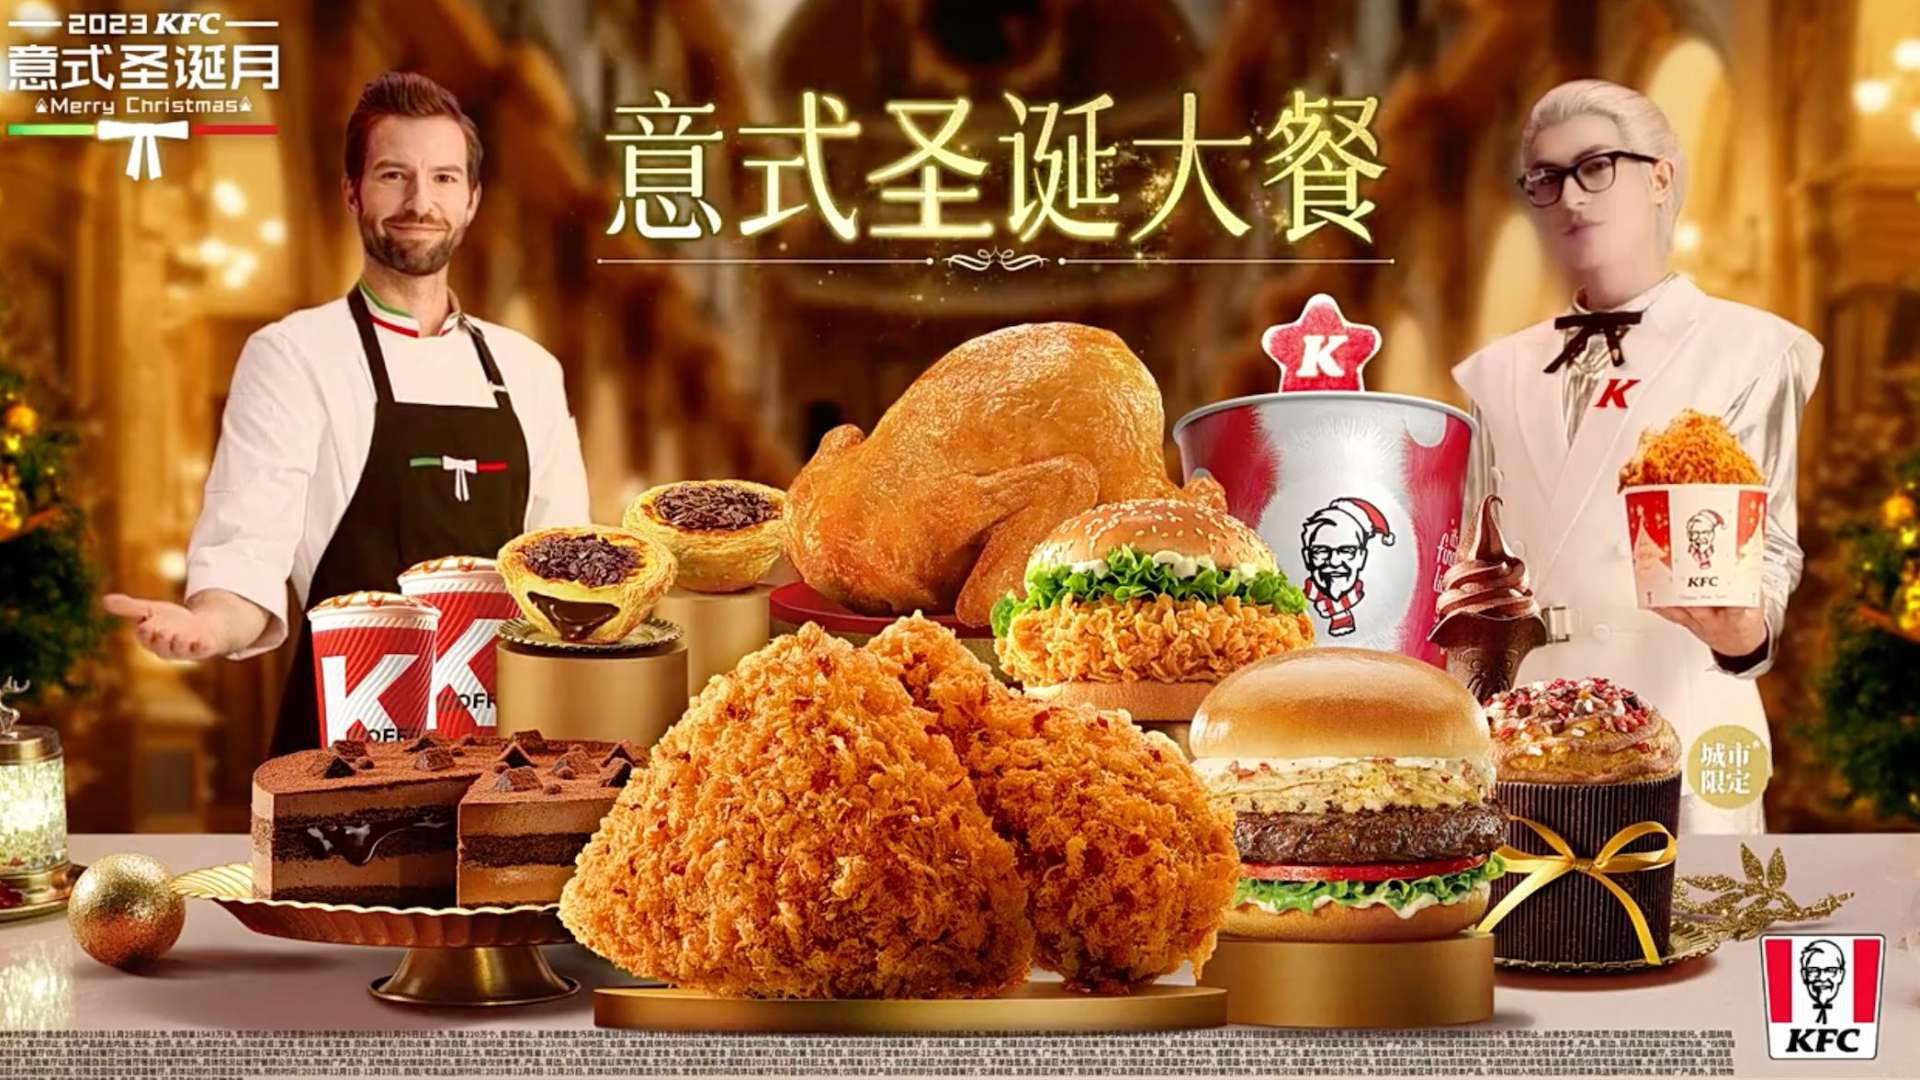 2023 KFC 意式圣诞月 15s_1116-广告片-餐饮食品视频-新片场